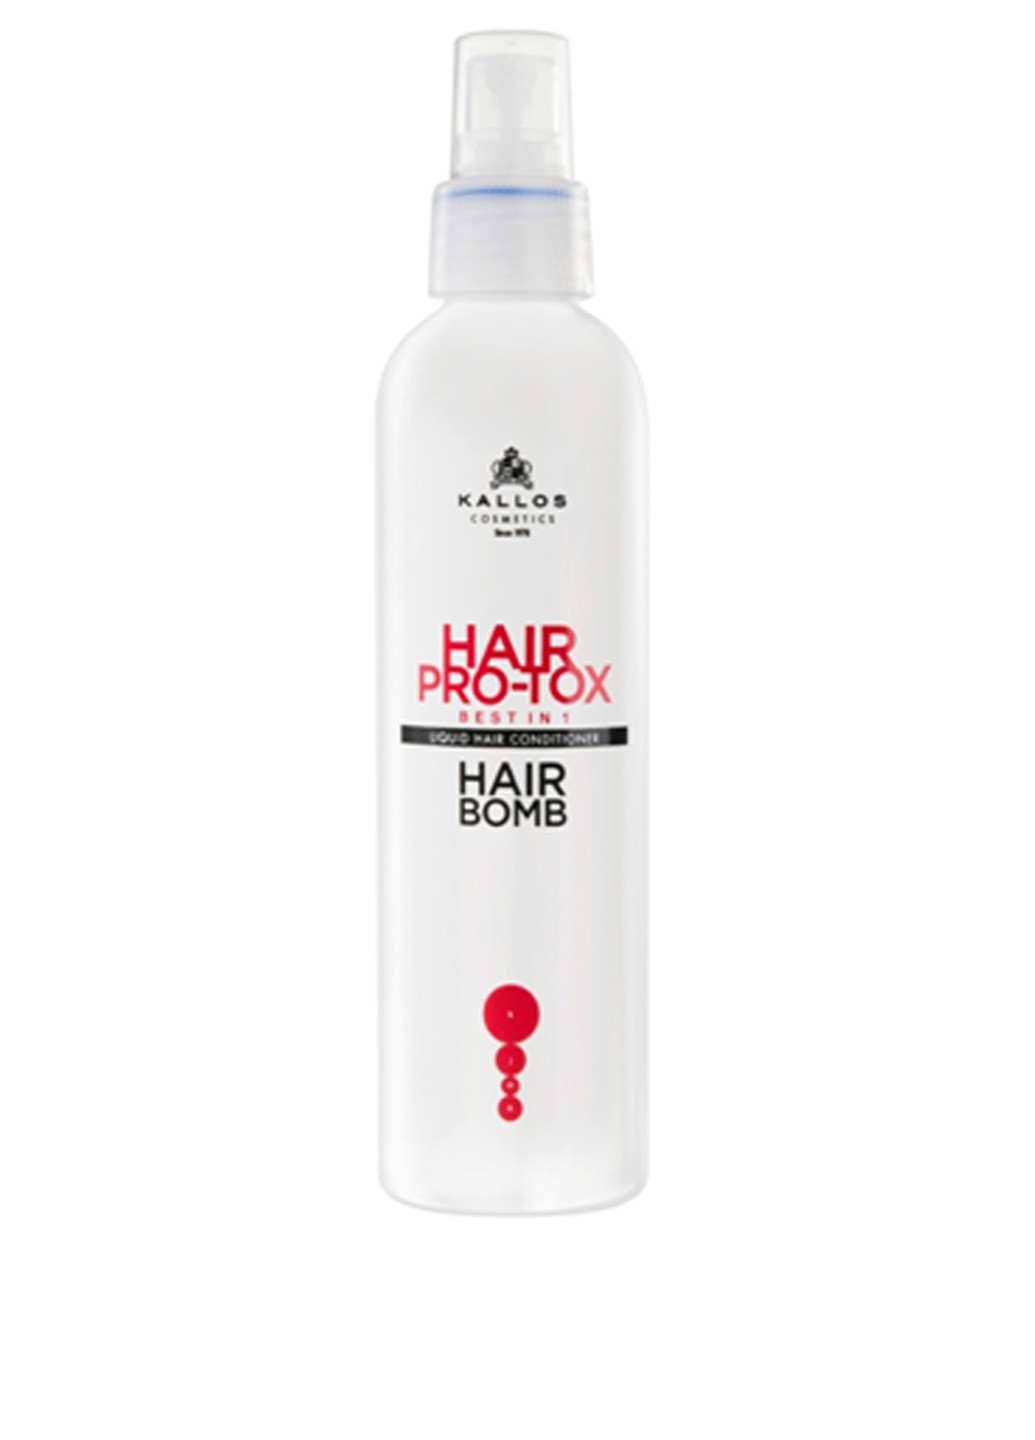 Кондиционер-спрей для волос "Про-Токс" Kallos Hair Pro-Tox Hair Bomb 200 мл Kallos Cosmetics (83217653)